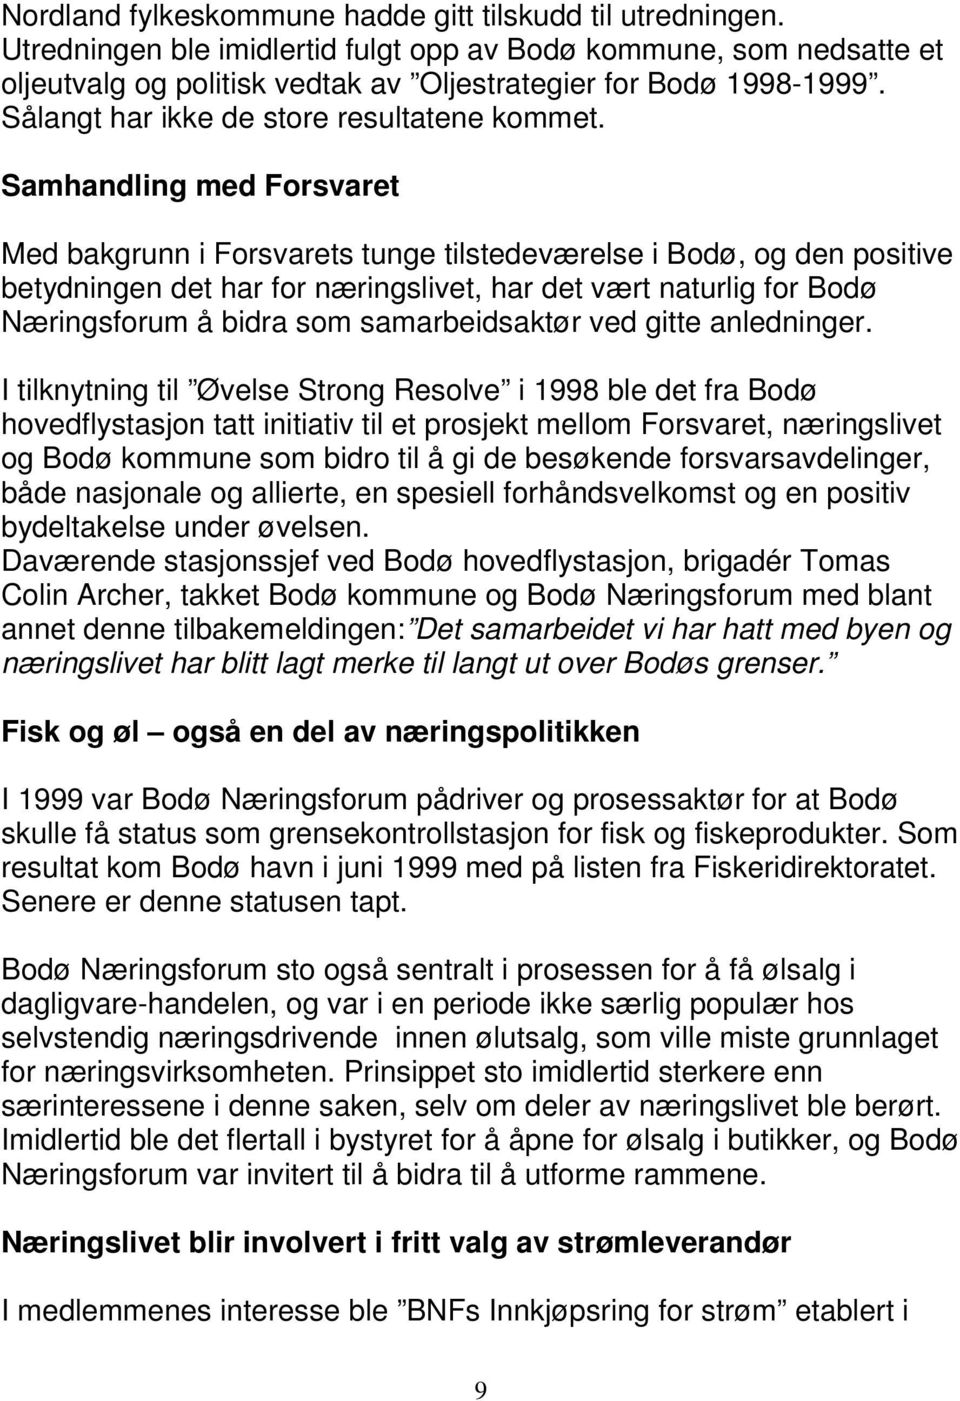 Samhandling med Forsvaret Med bakgrunn i Forsvarets tunge tilstedeværelse i Bodø, og den positive betydningen det har for næringslivet, har det vært naturlig for Bodø Næringsforum å bidra som